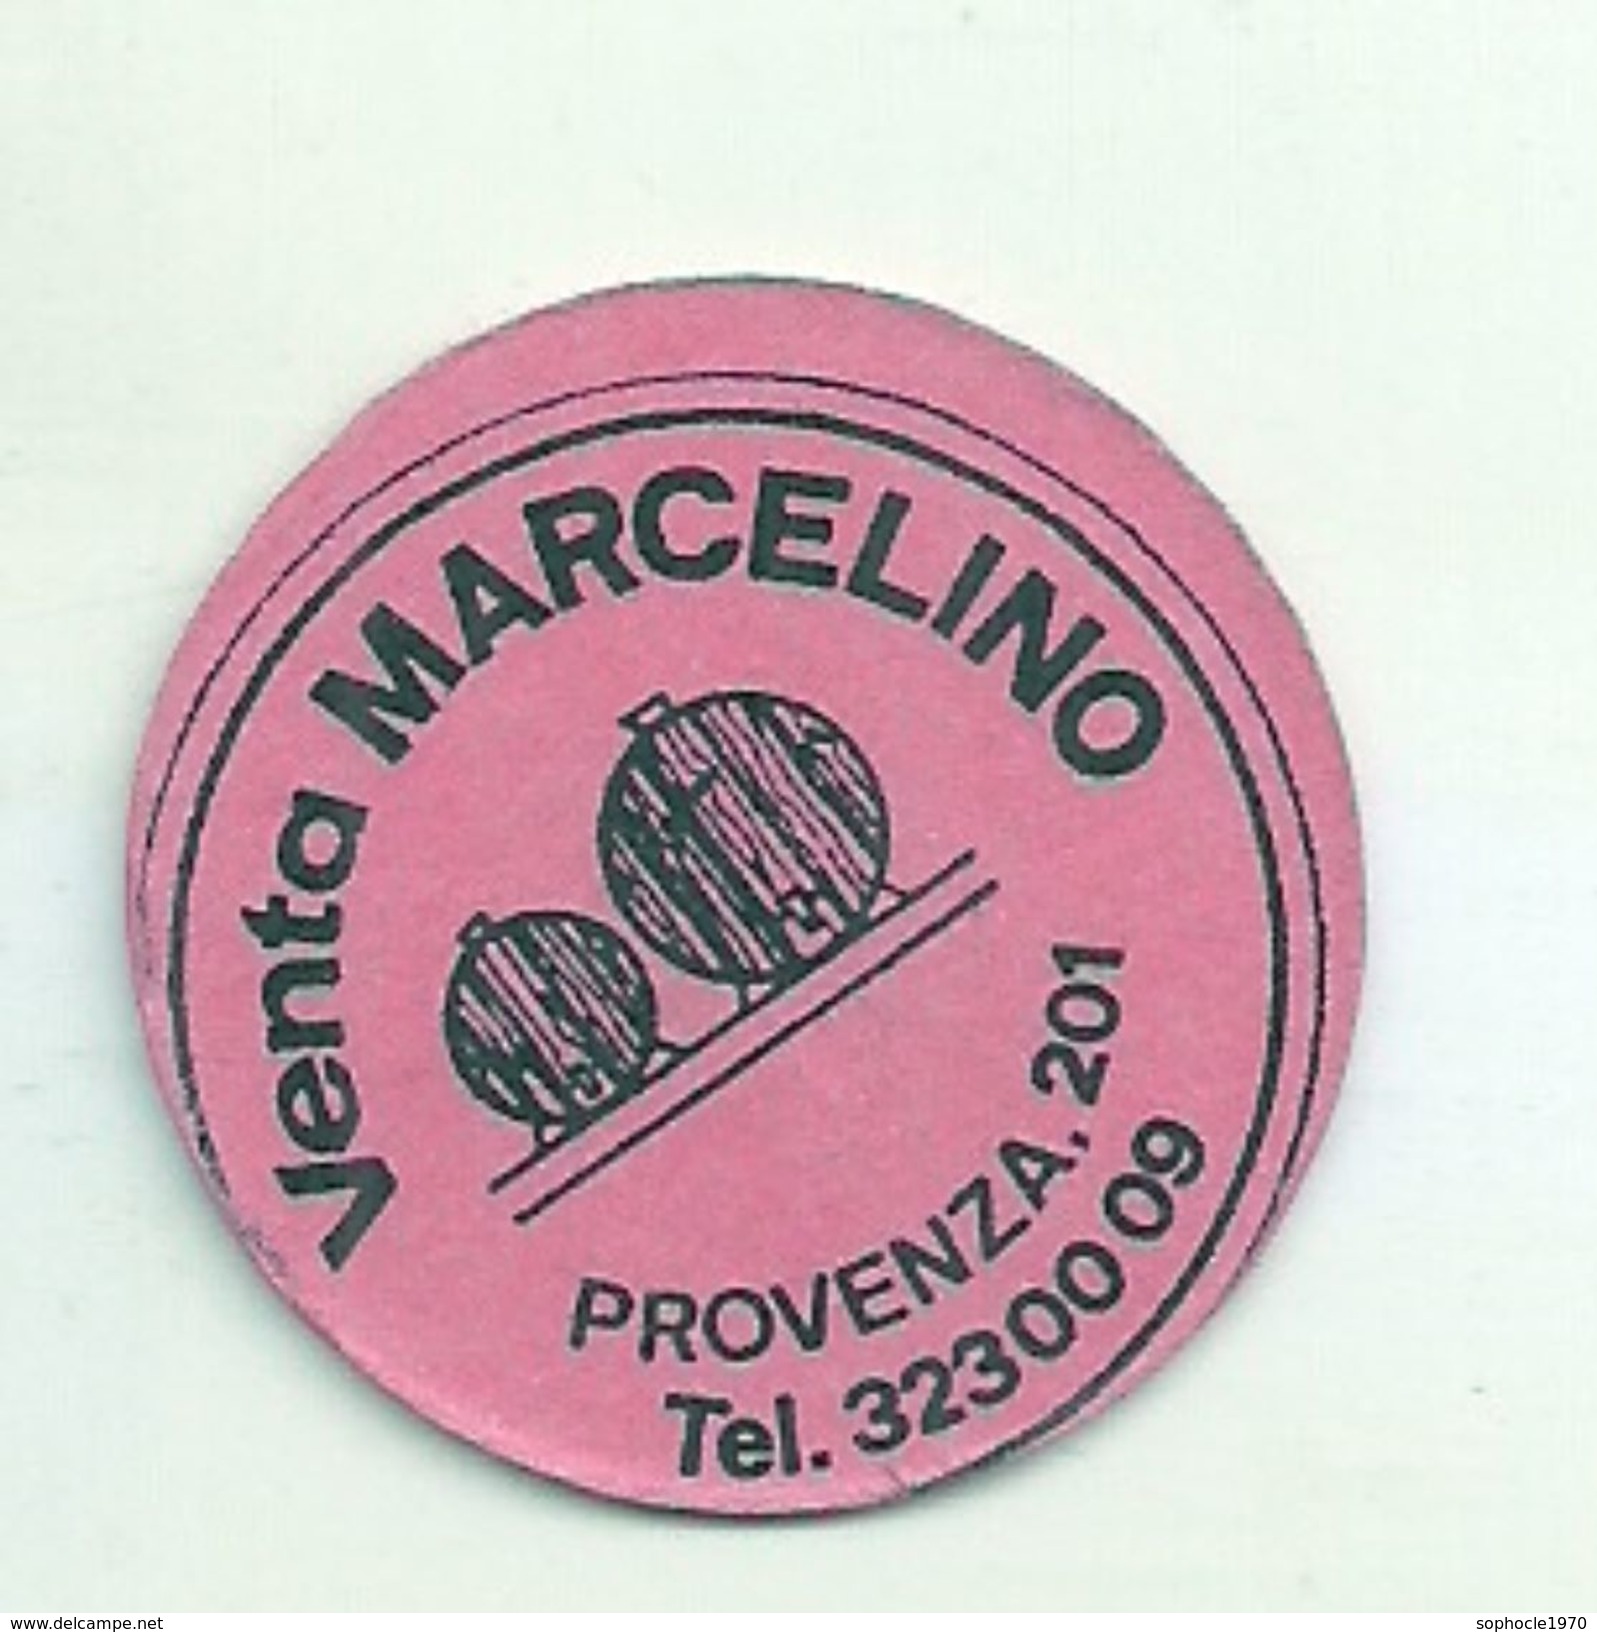 ESPAGNE - 1977 - Monnaie De Carton FRACCIONARIO Venta Marcelino Provenza 201 - Notgeld